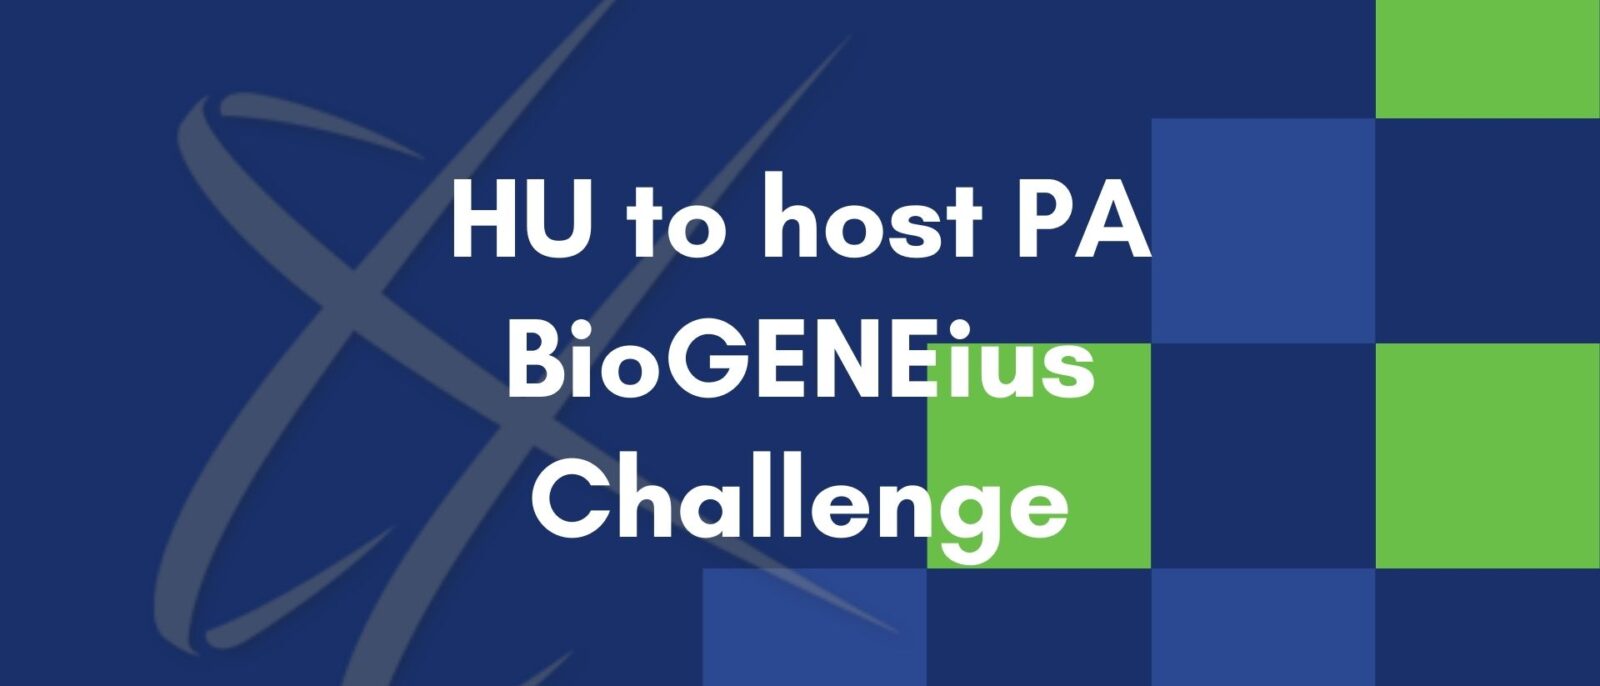 HU to host PA BioGENEius Challenge